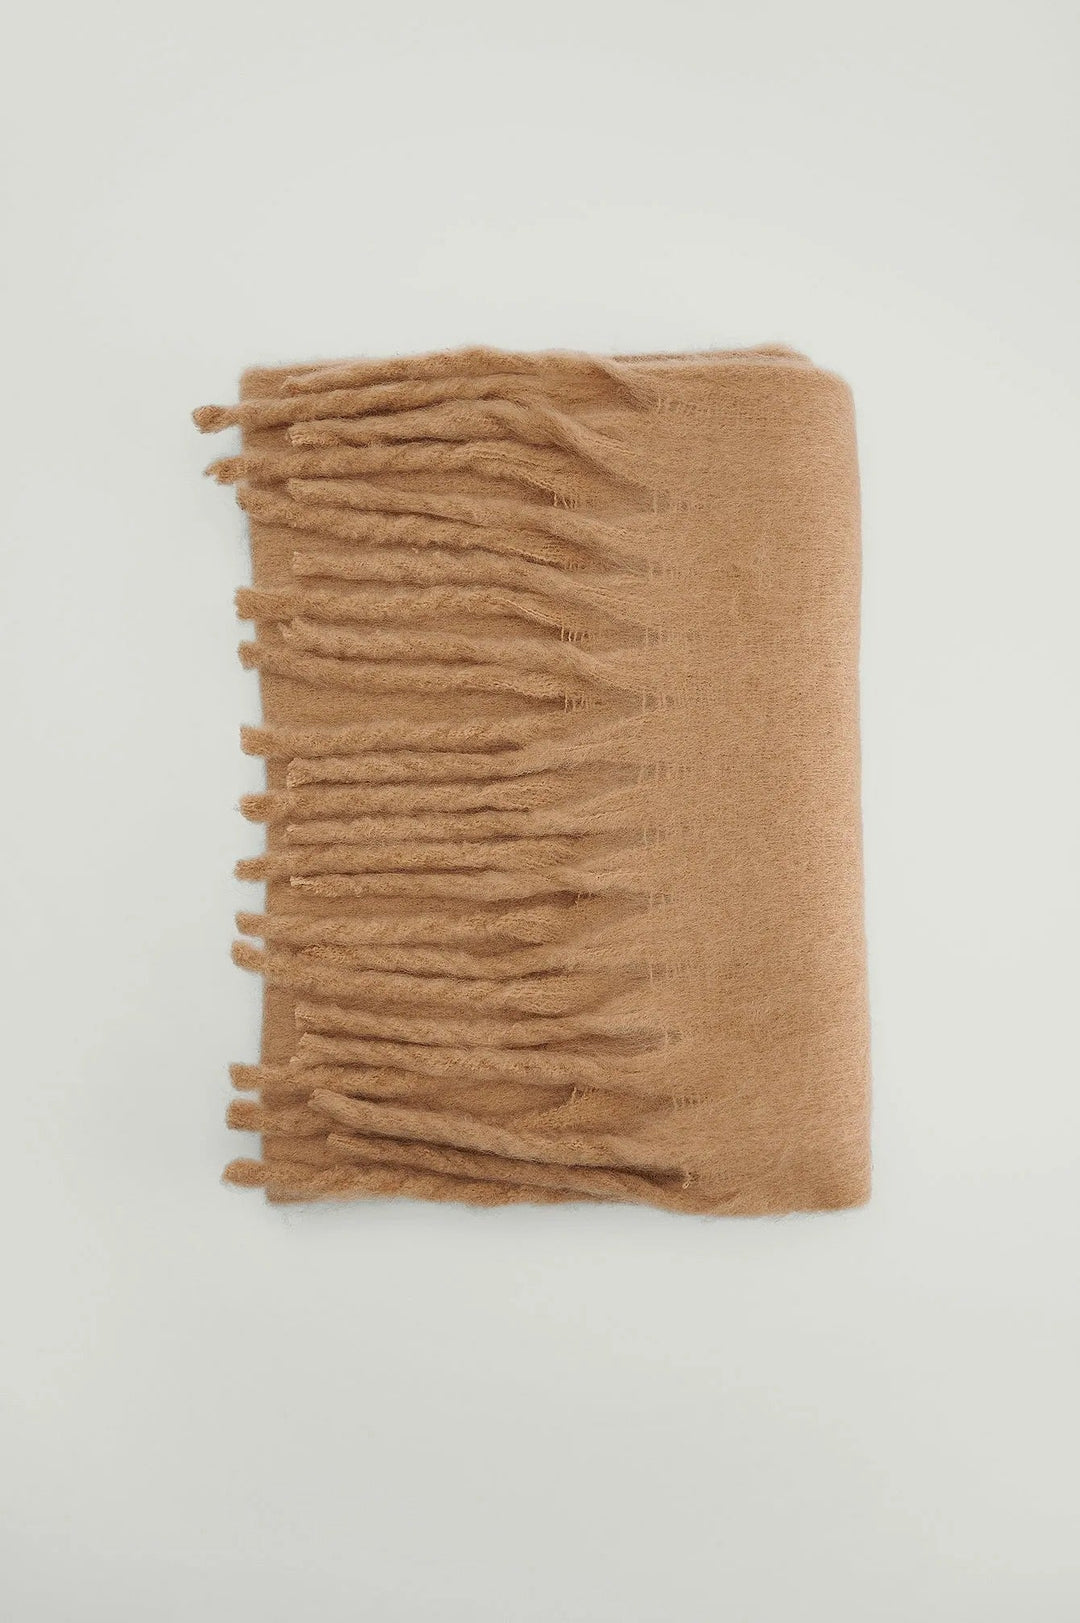 Soft gefleckt Tassle Schal